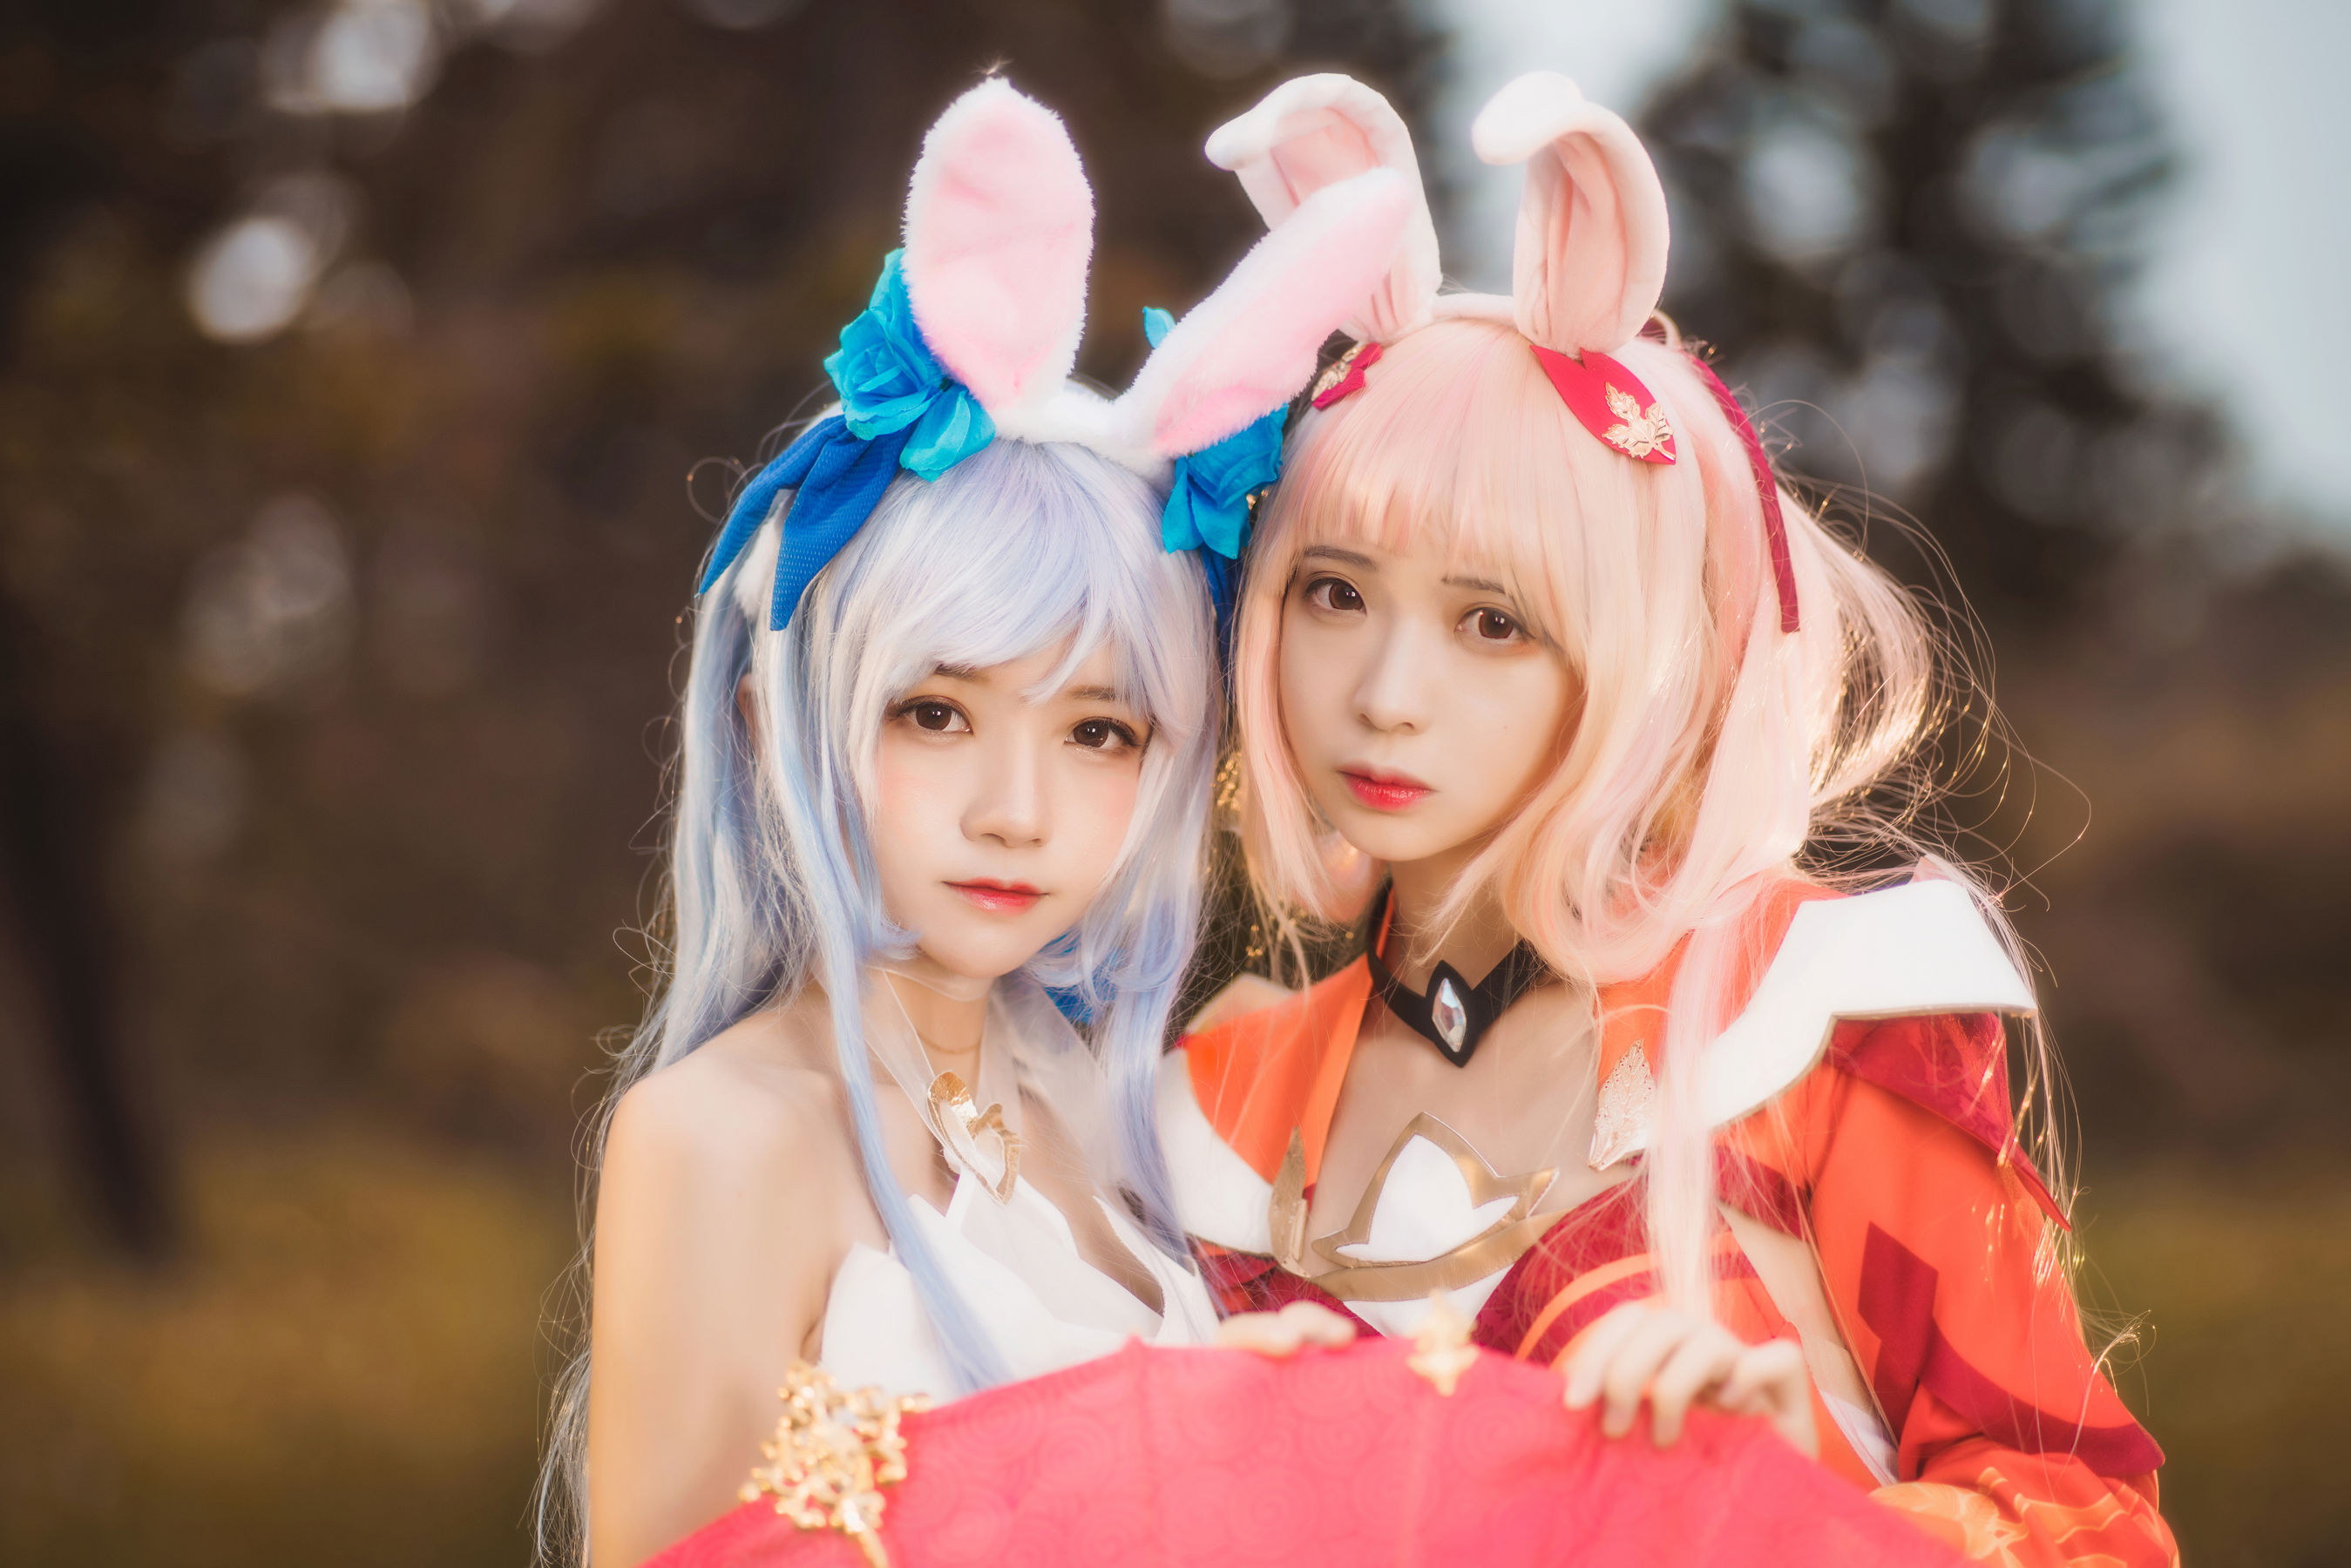 People 2698x1800 CherryNeko women model two women cosplay Asian bunny ears long hair women outdoors Feng Mao